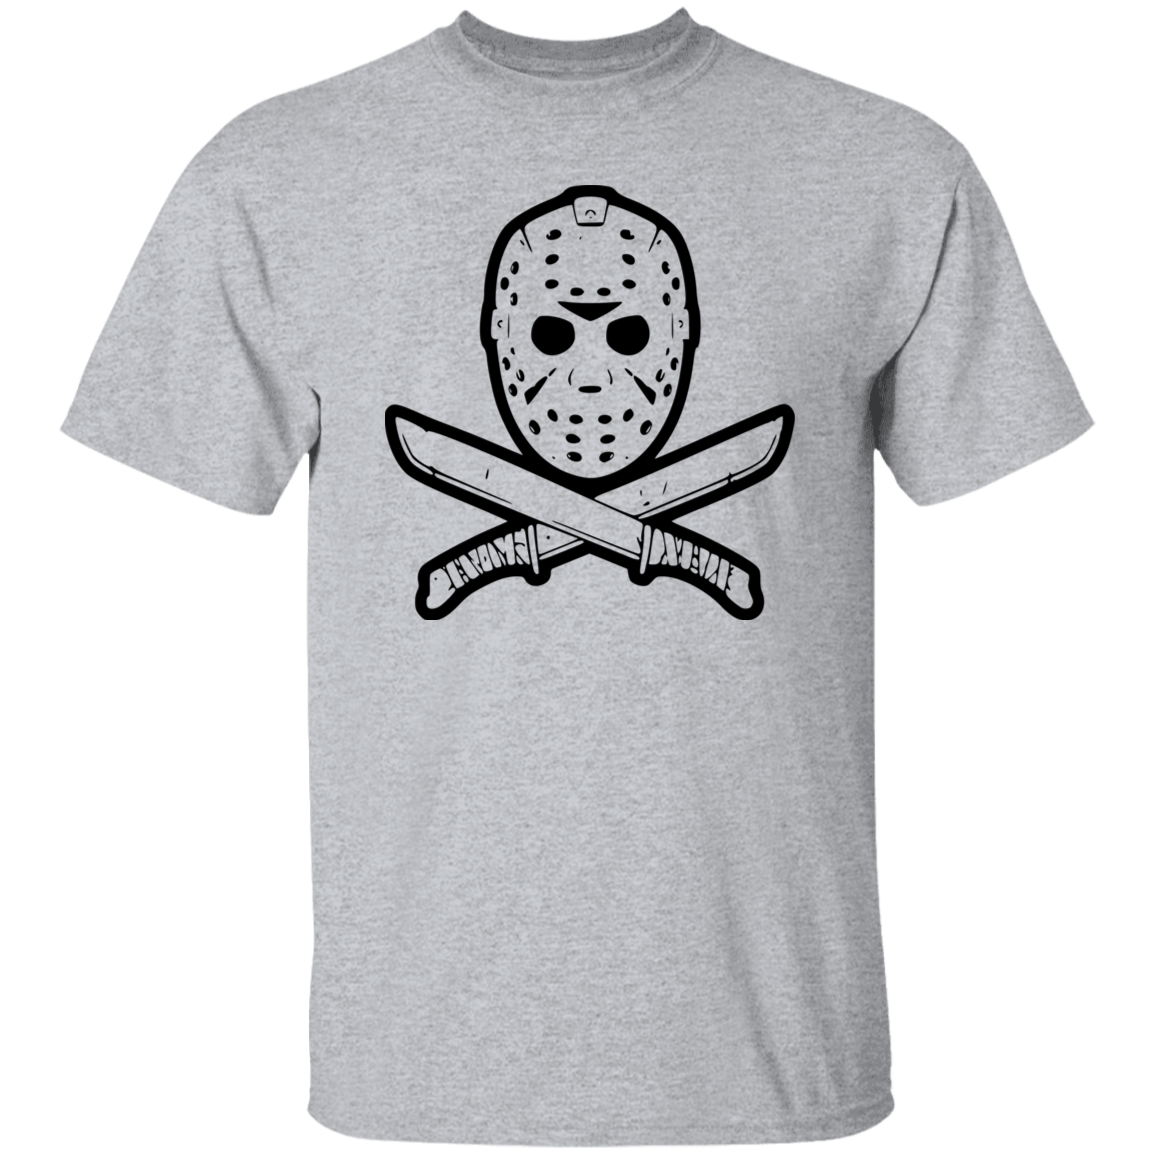 Jason 5.3 oz. T-Shirt